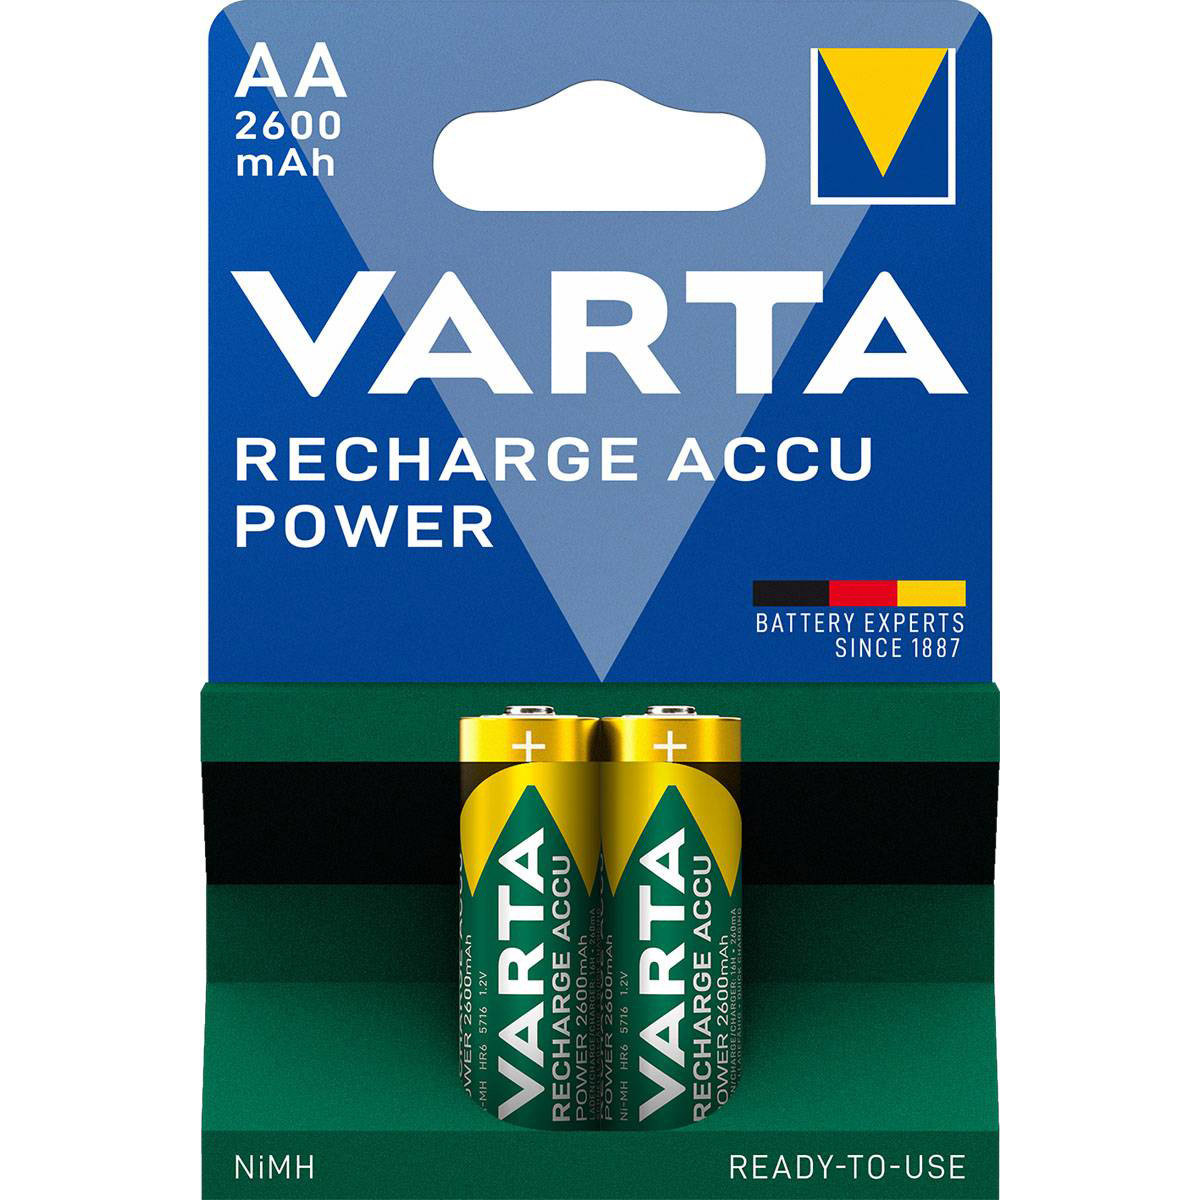 Аккумулятор VARTA Rechargeable Accu AA 2600mAh 2шт/уп (05716 101 402)